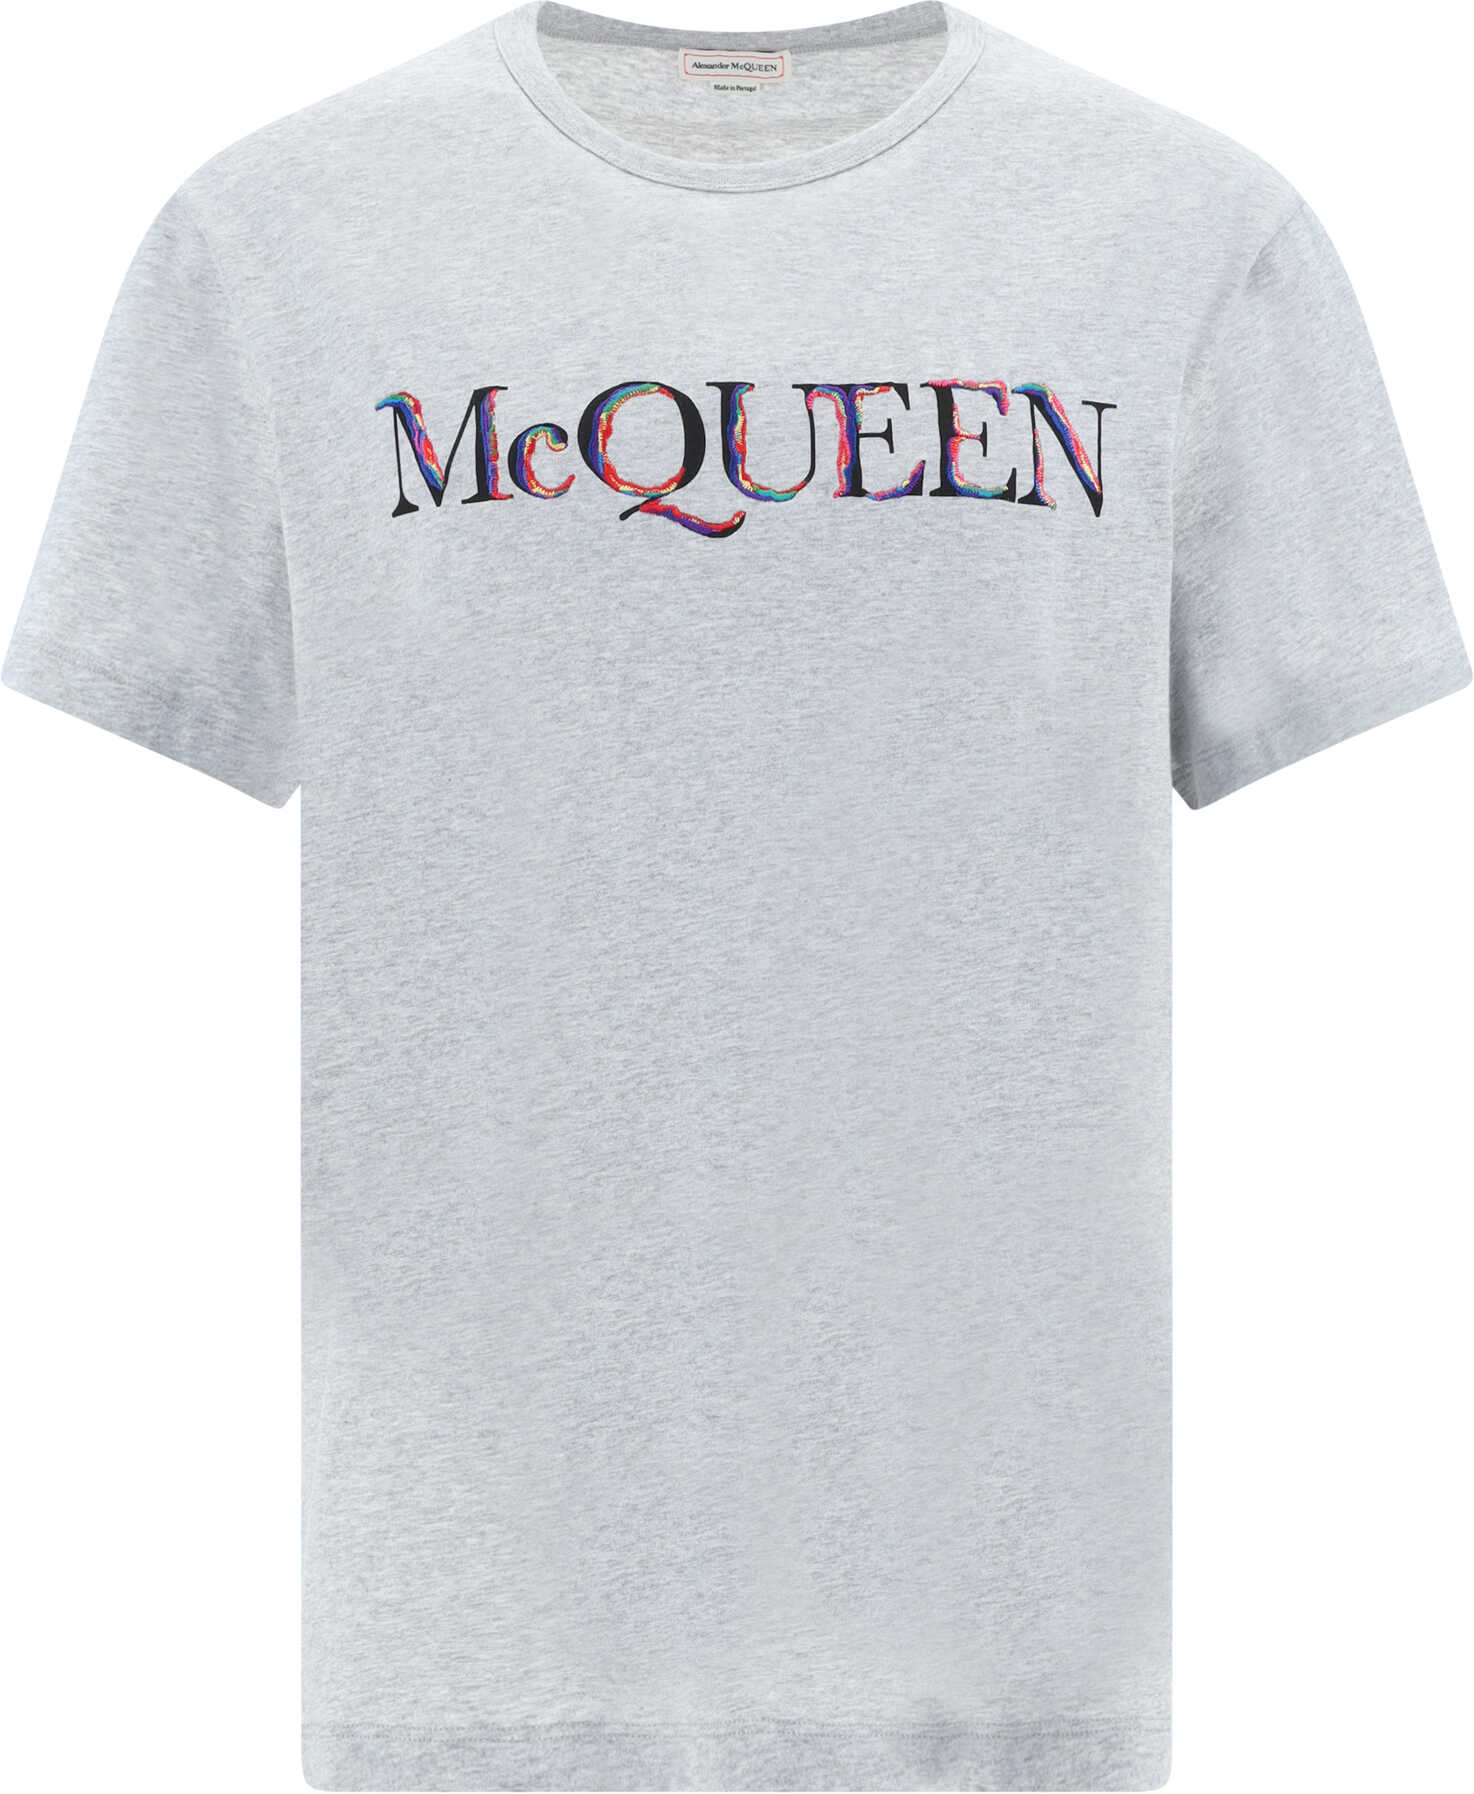 Alexander McQueen T-Shirt LIGHT PALE GREY/MIX